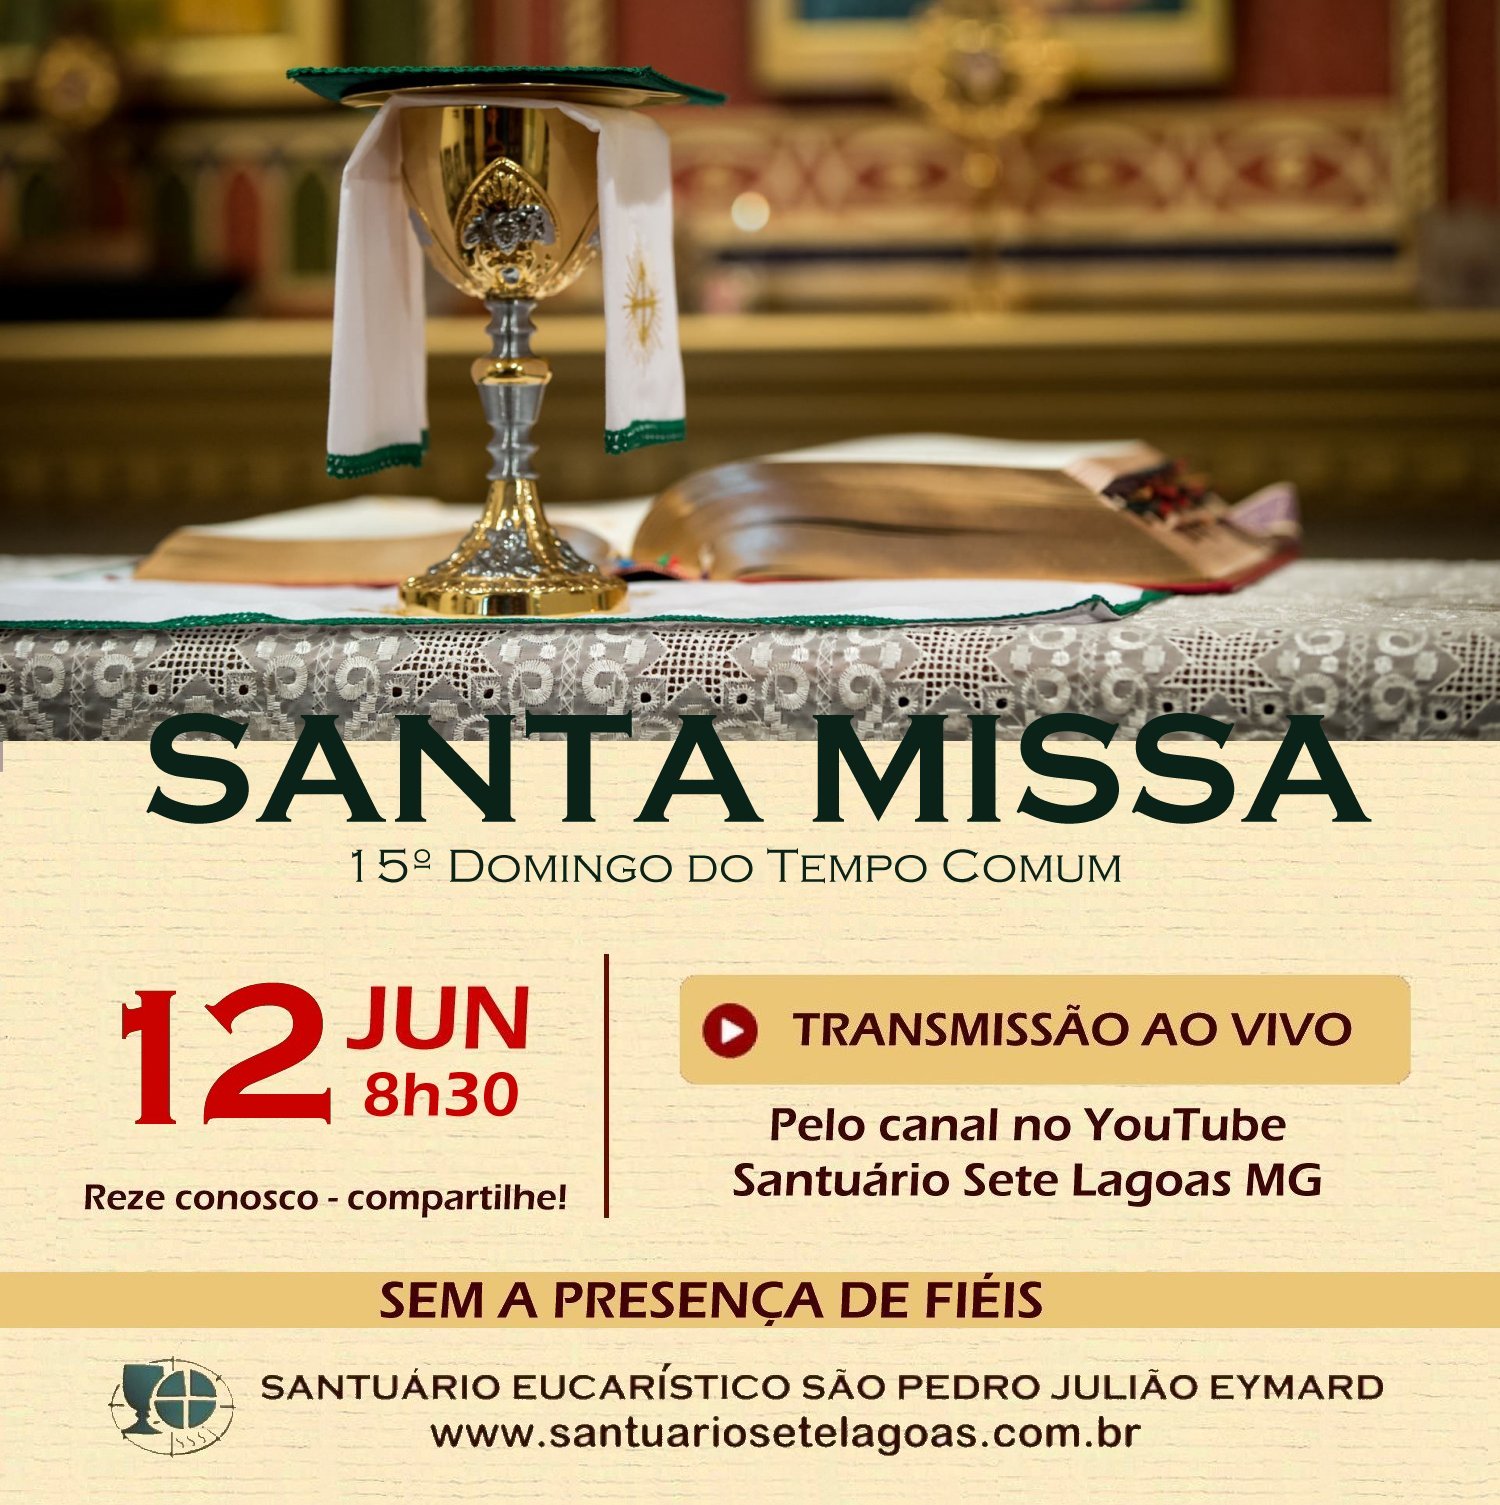 Santa Missa com transmissão ao vivo, 12/07. Participe!